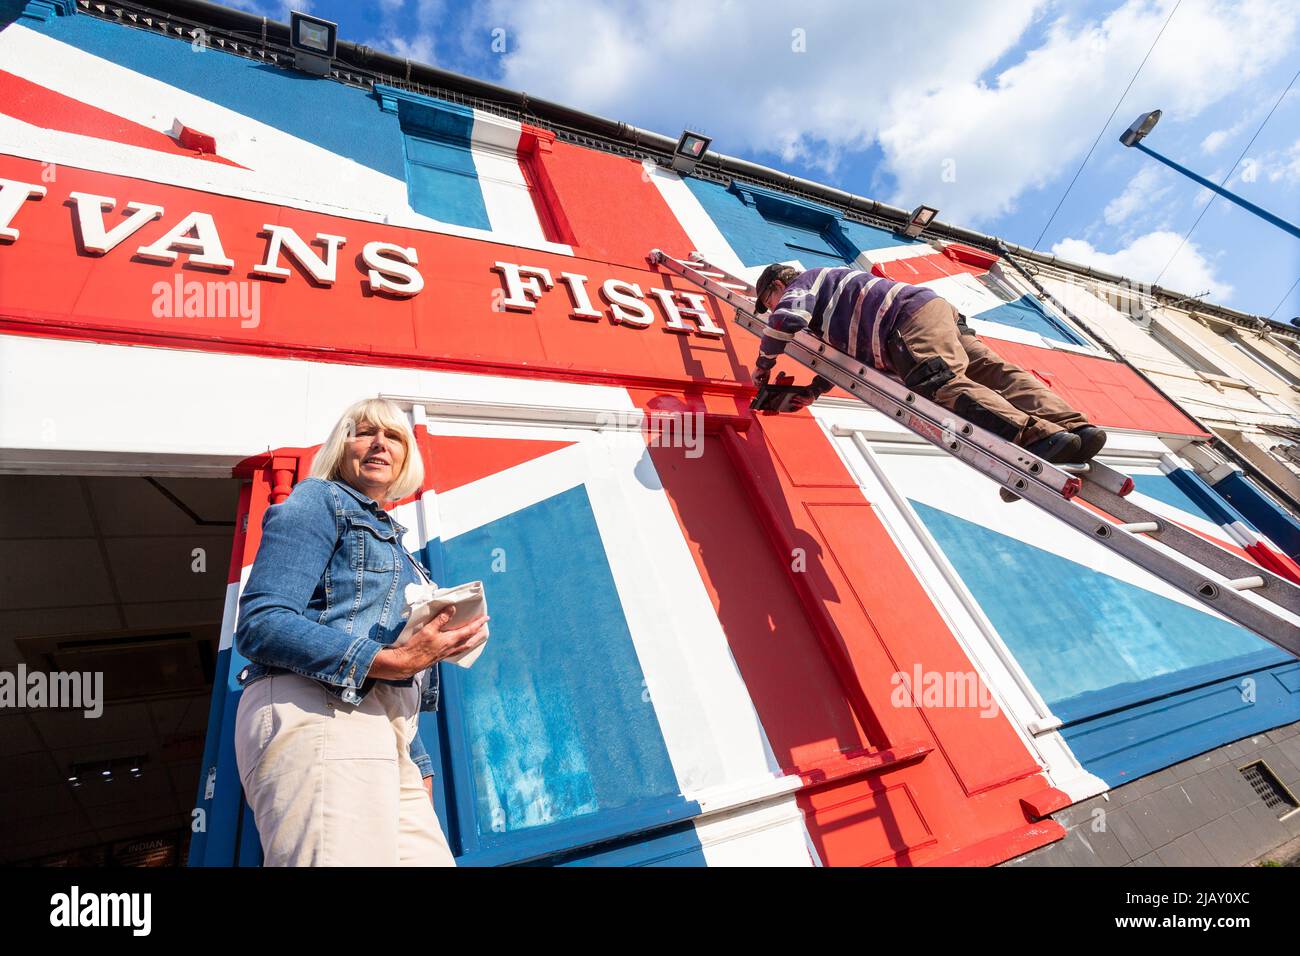 Cradley Heath, West Midlands, Reino Unido. 1st de junio de 2022. Warren Rudge, propietario de la tienda de chips, pone los toques finales en la bandera de la Unión que él y su hijo James han pintado en su tienda de pescado y fichas en Cradley Heath, West Midlands. La bandera pintada cubre toda la fachada de Ivan's Fish and Chips incluyendo las ventanas, y ha tomado todo el día para completarse. 'Ivan's Fish and Chips ha estado sirviendo pescado y patatas fritas durante 65 años - no tan largo como Su Majestad sin embargo. Pero he oído que la Reina es parcial al pescado y a las patatas fritas.' dice Warren. Crédito: Peter Lodeman/Alamy Live News Foto de stock